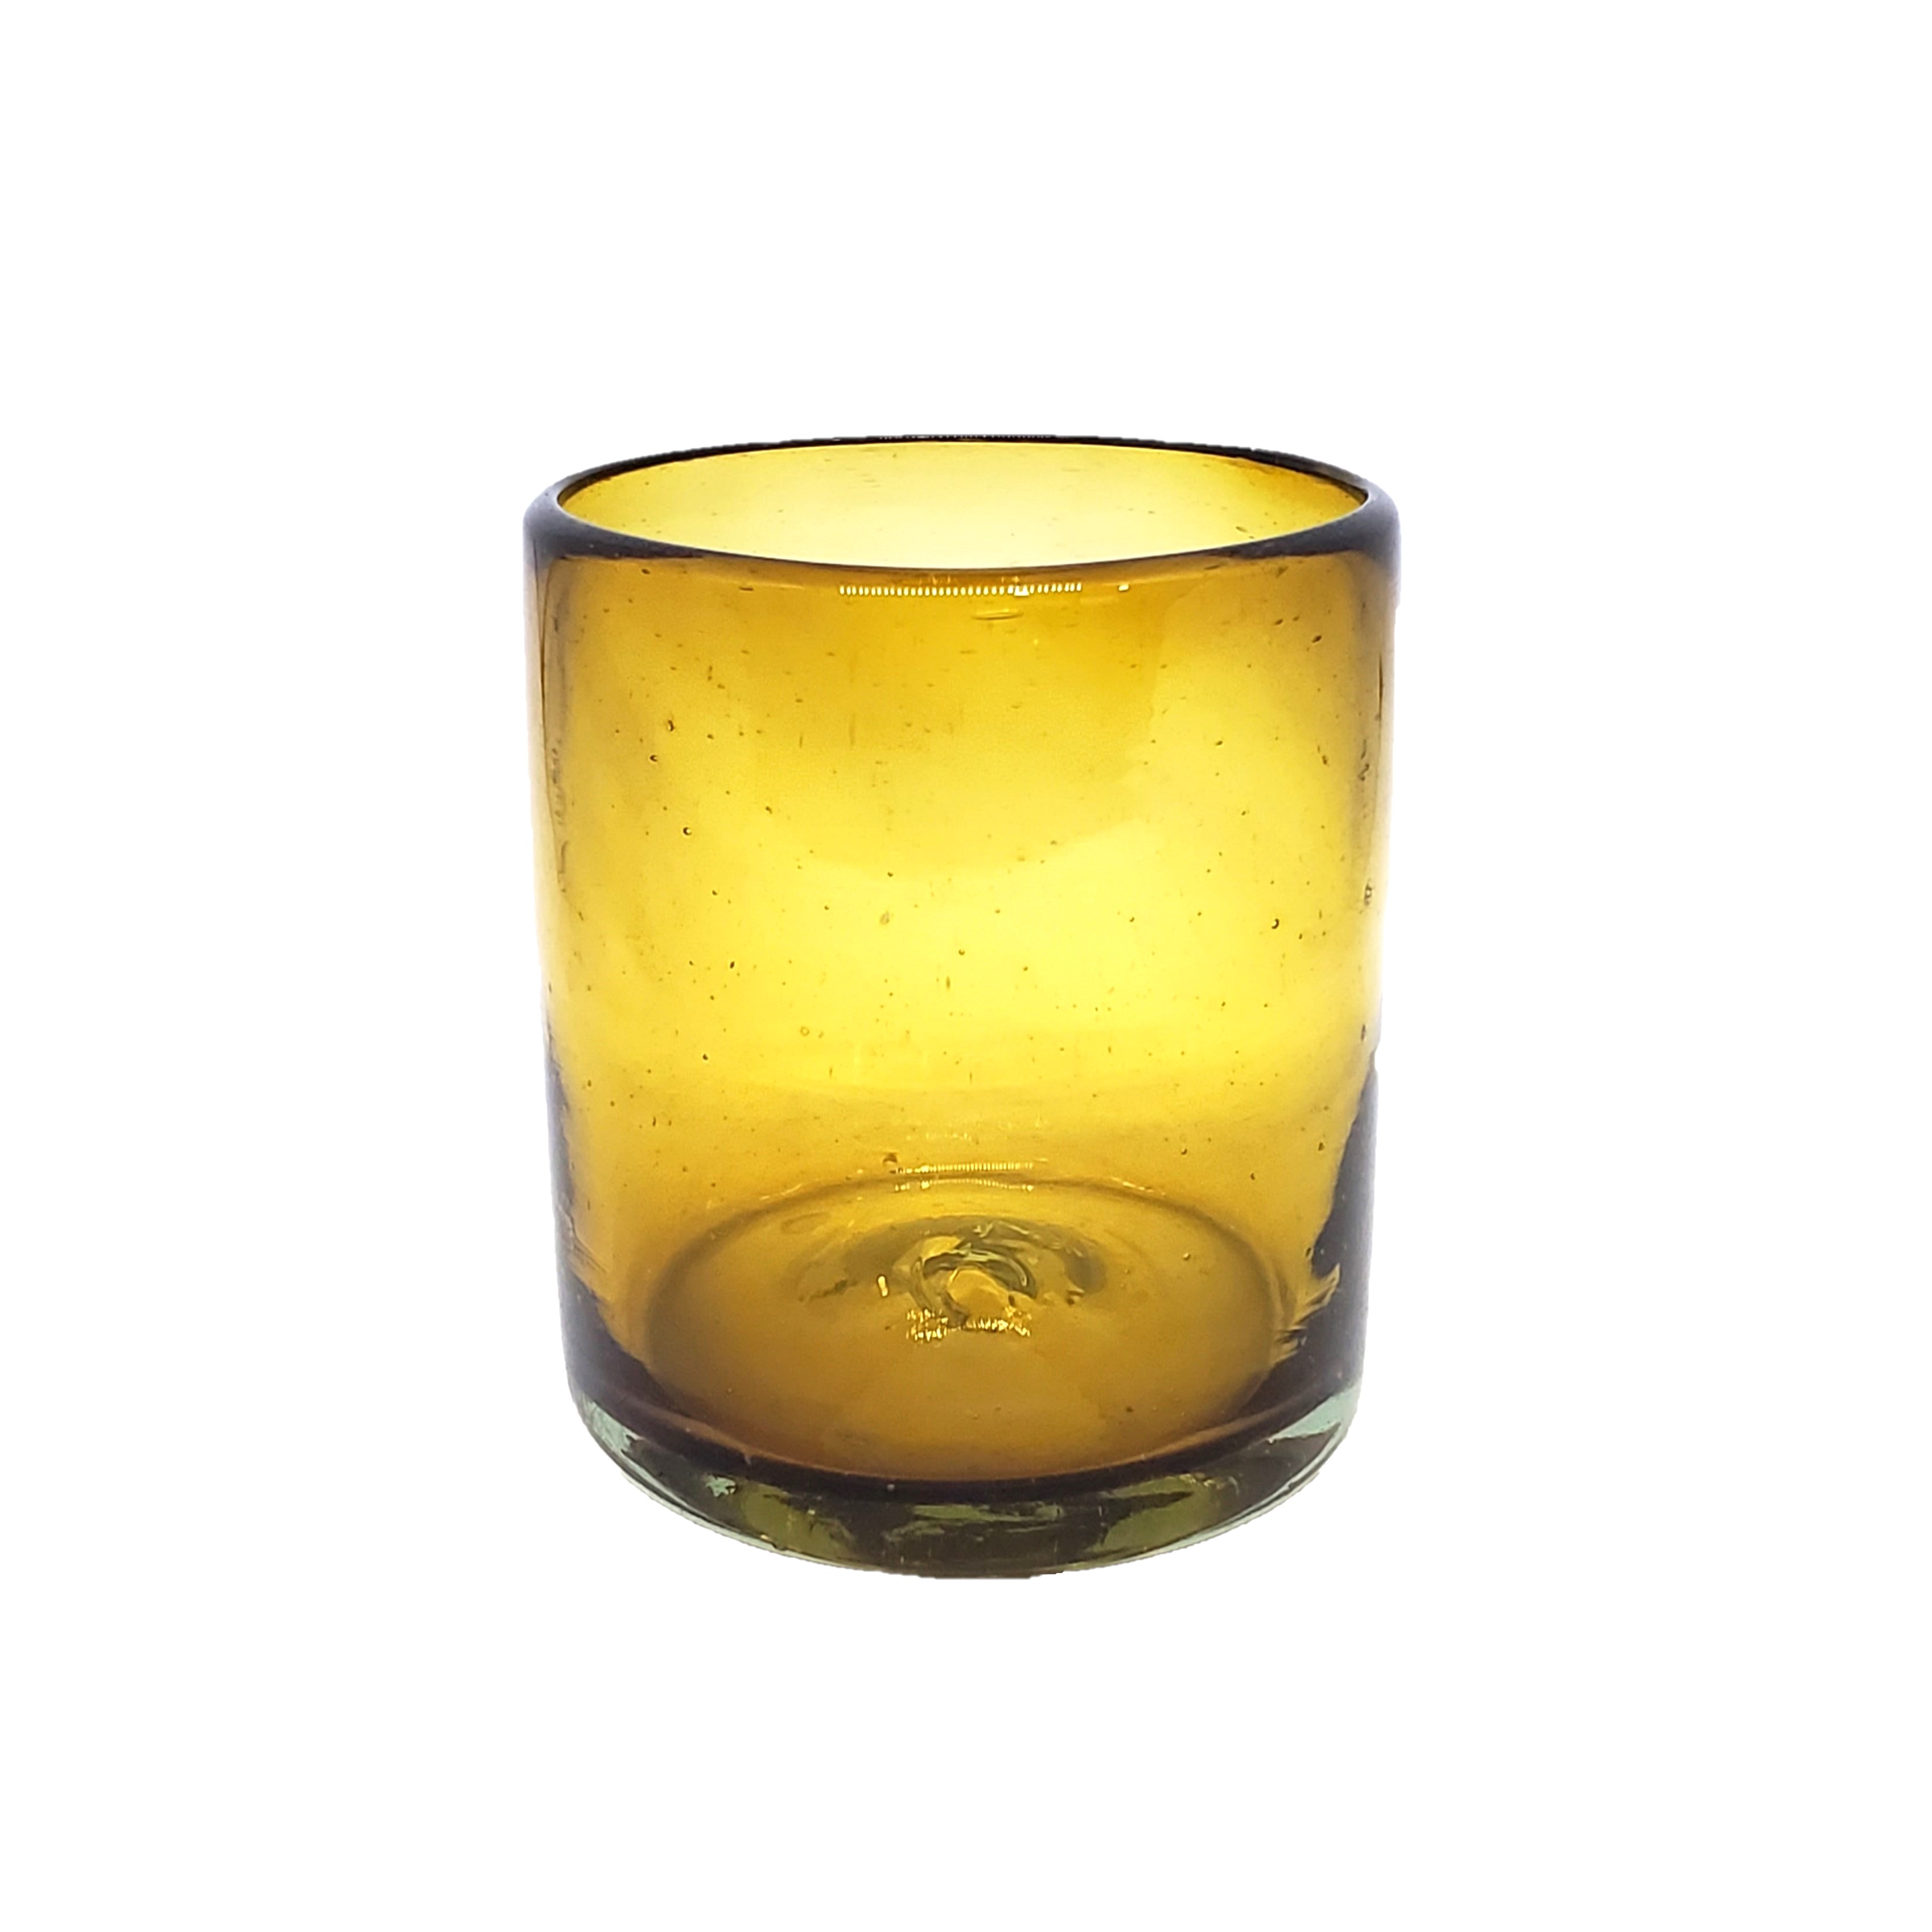 VIDRIO SOPLADO al Mayoreo / s 9 oz color Ambar Sólido (set de 6) / Éstos artesanales vasos le darán un toque colorido a su bebida favorita.